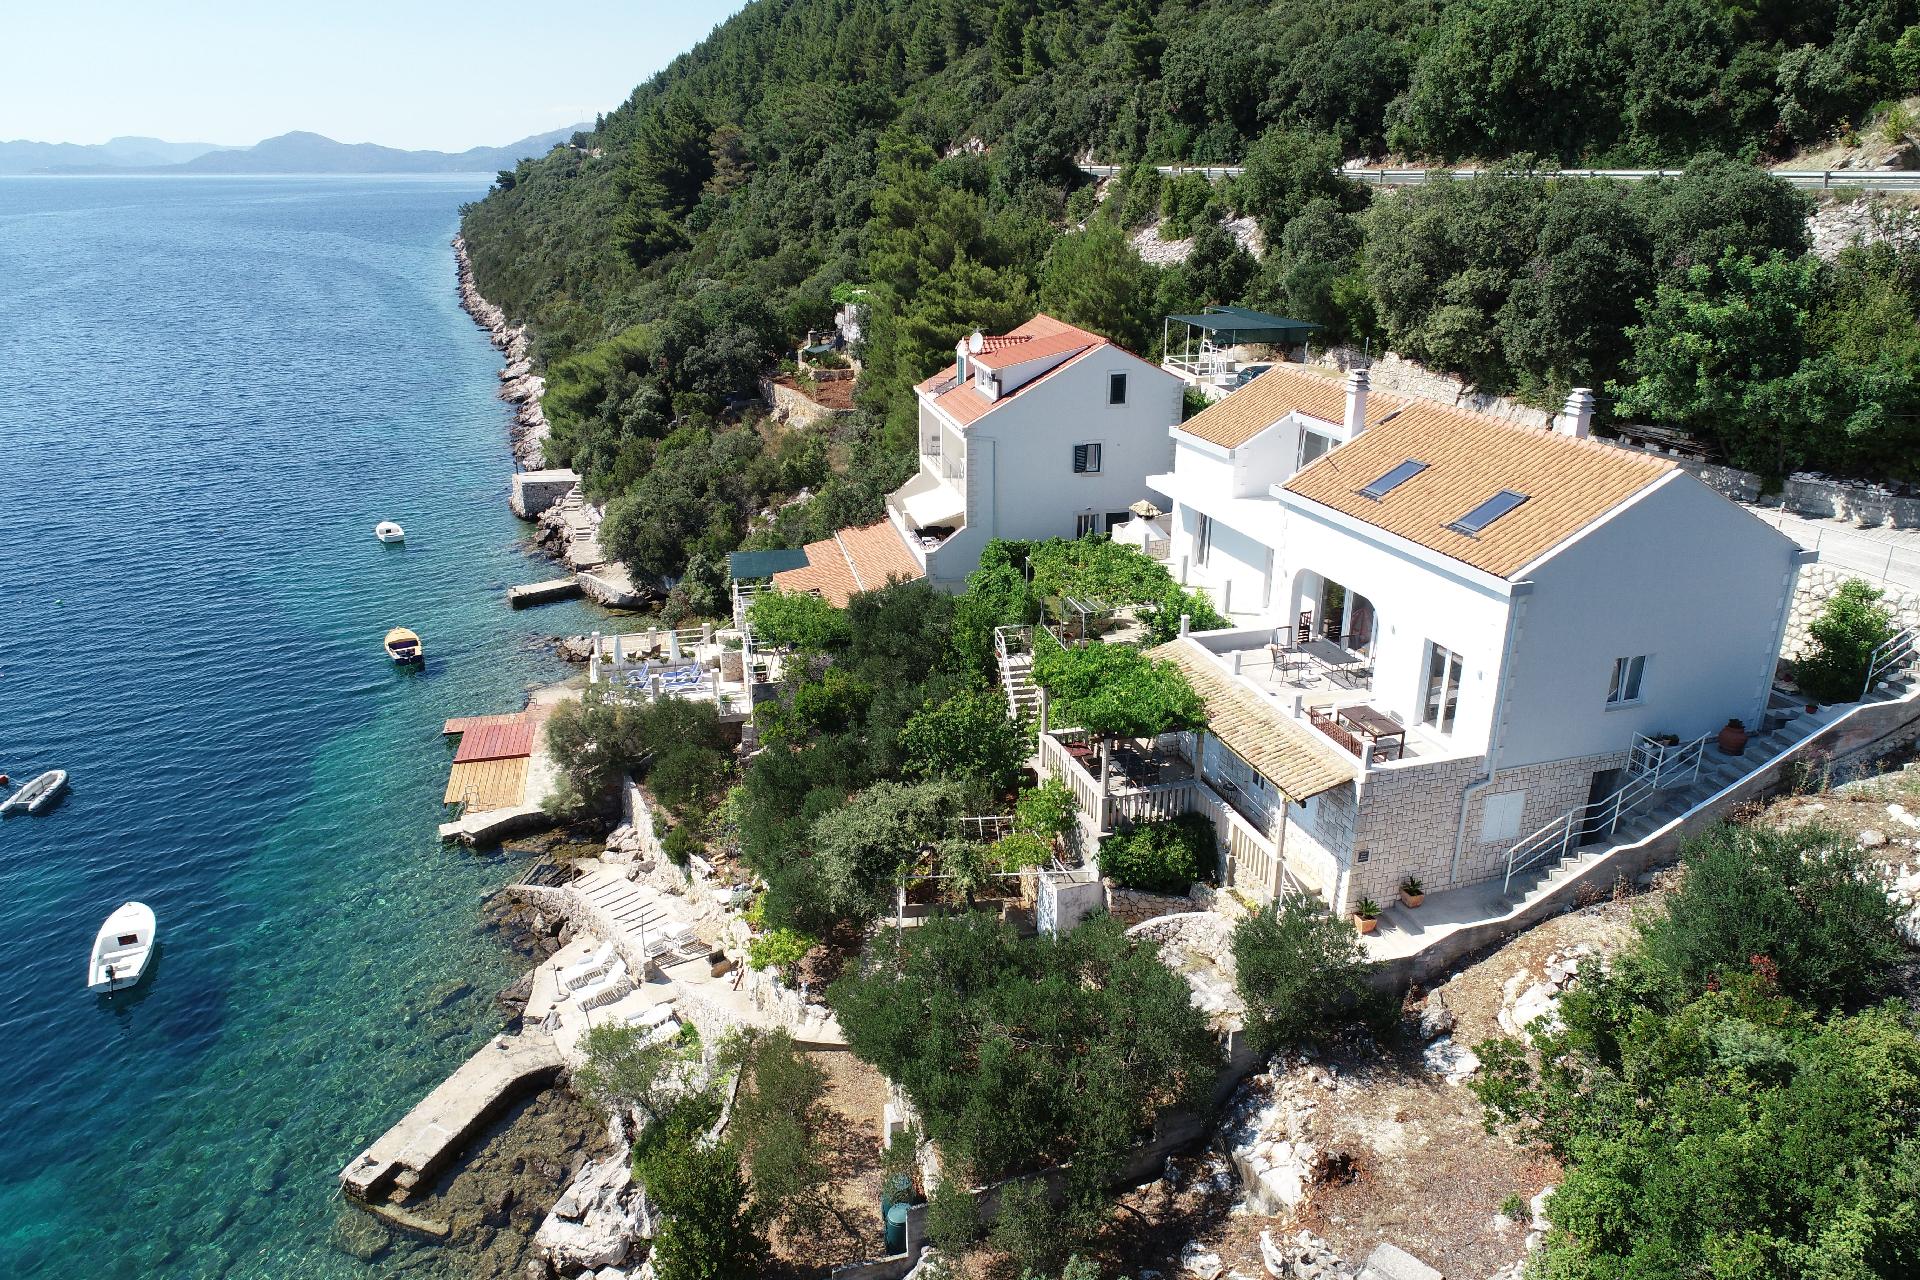 Ferienwohnung für 4 Personen ca. 50 m² i Ferienhaus in Kroatien